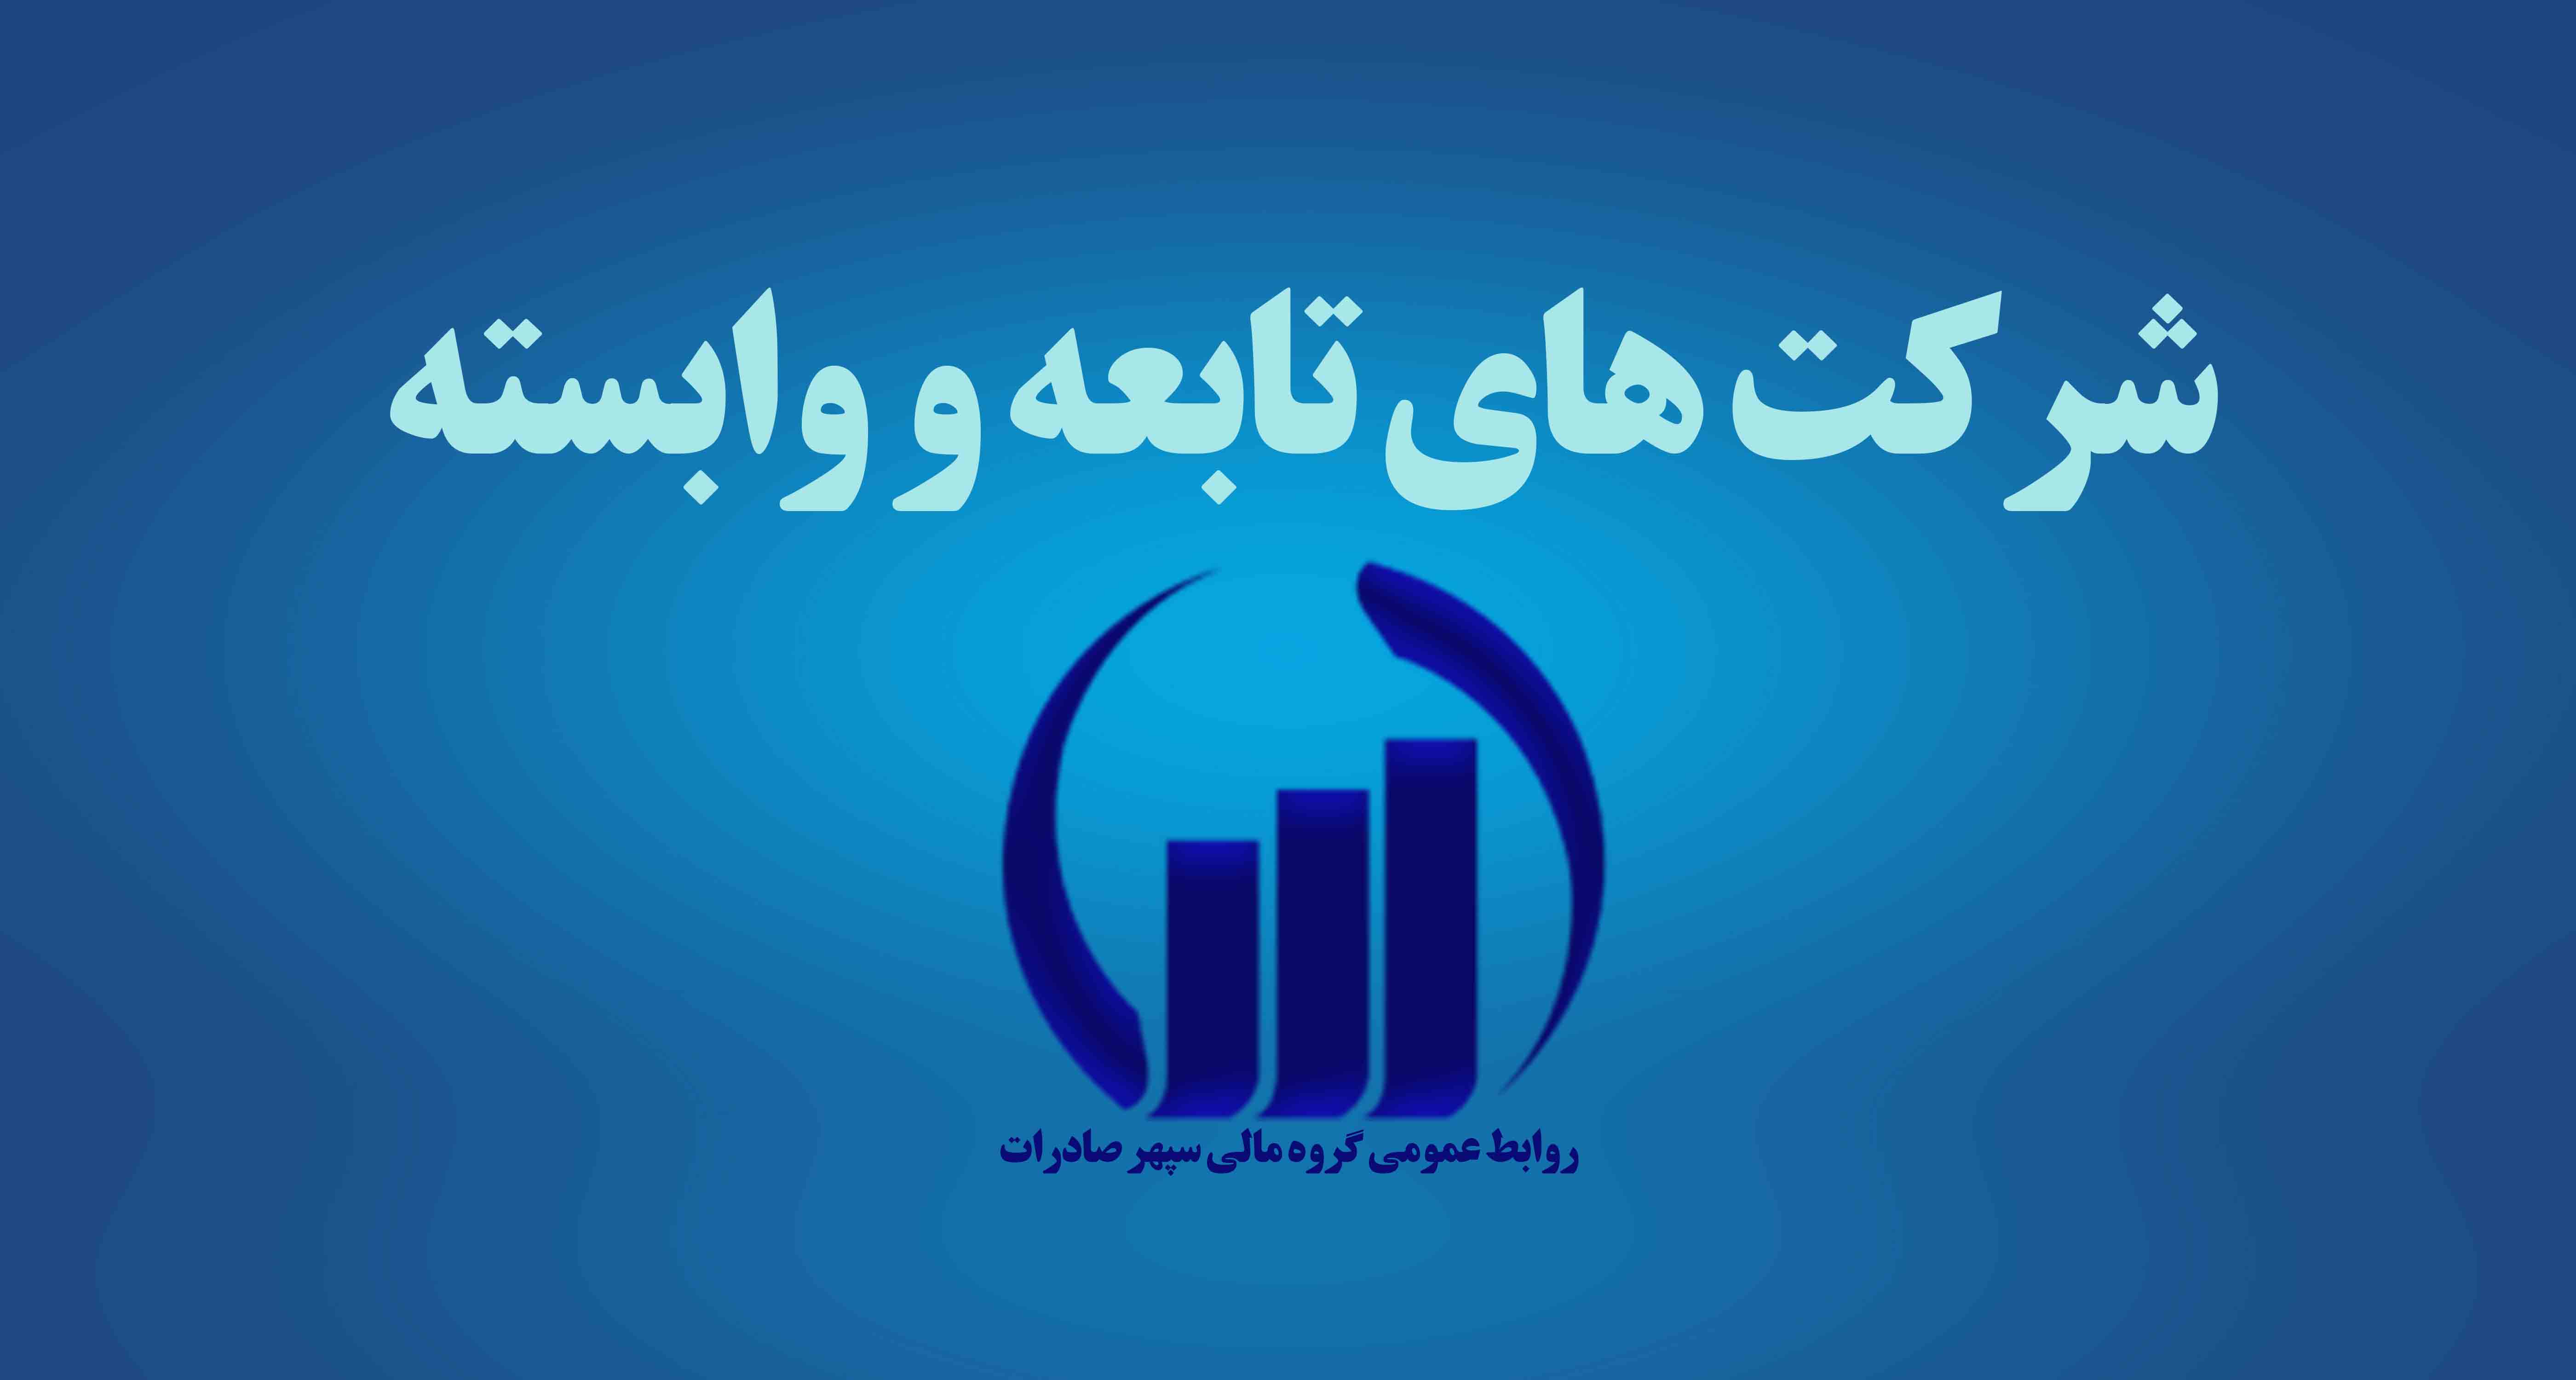 عمران و مسکن‌سازان خوزستان  (سهامی خاص)